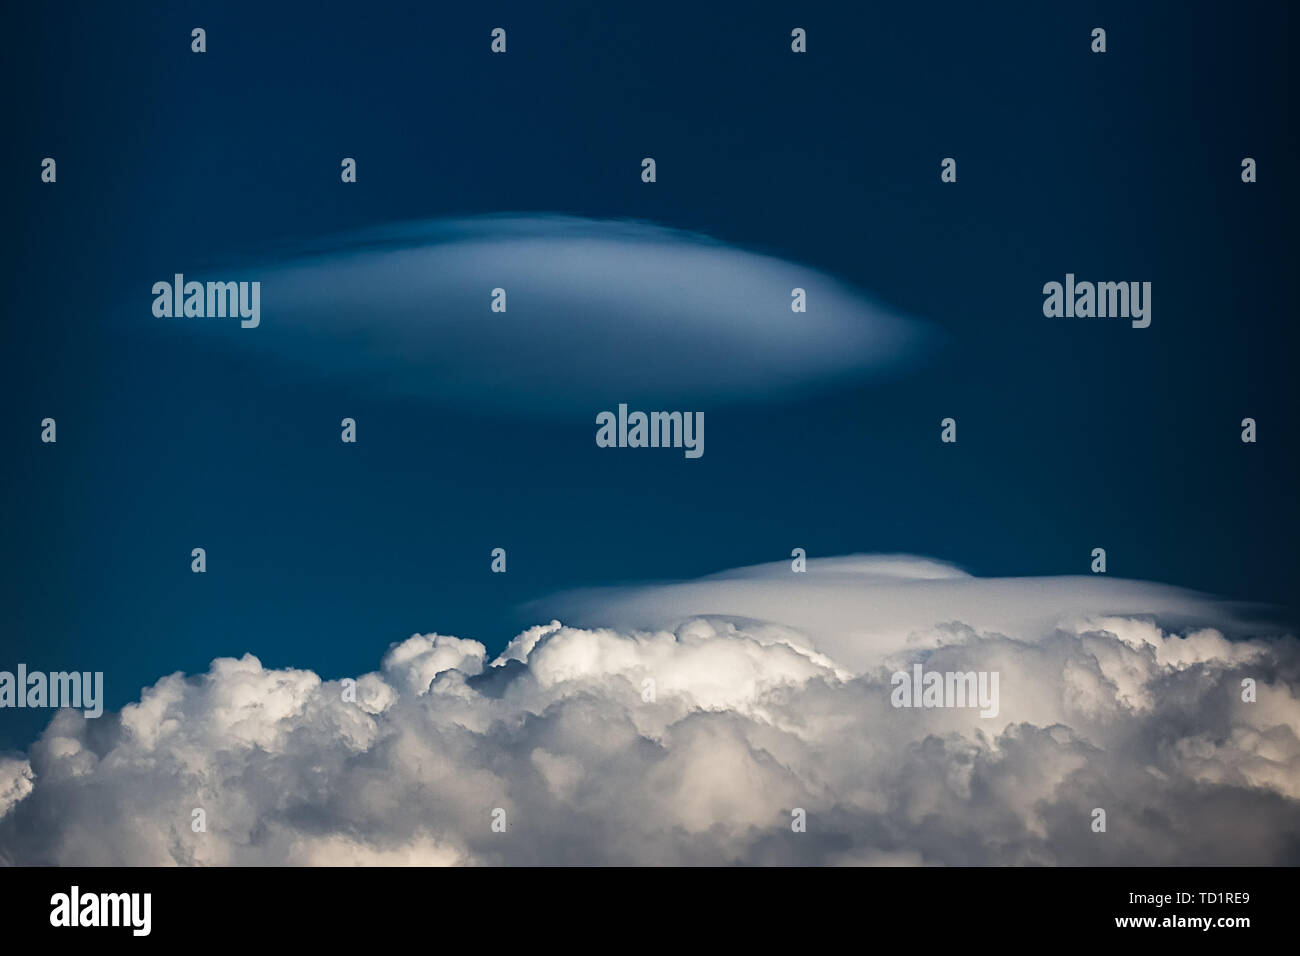 Seltene Linsenförmige Wolken Altocumulus lenticularis auf einem Cumulus Cloud vor einem blauen Himmel Stockfoto